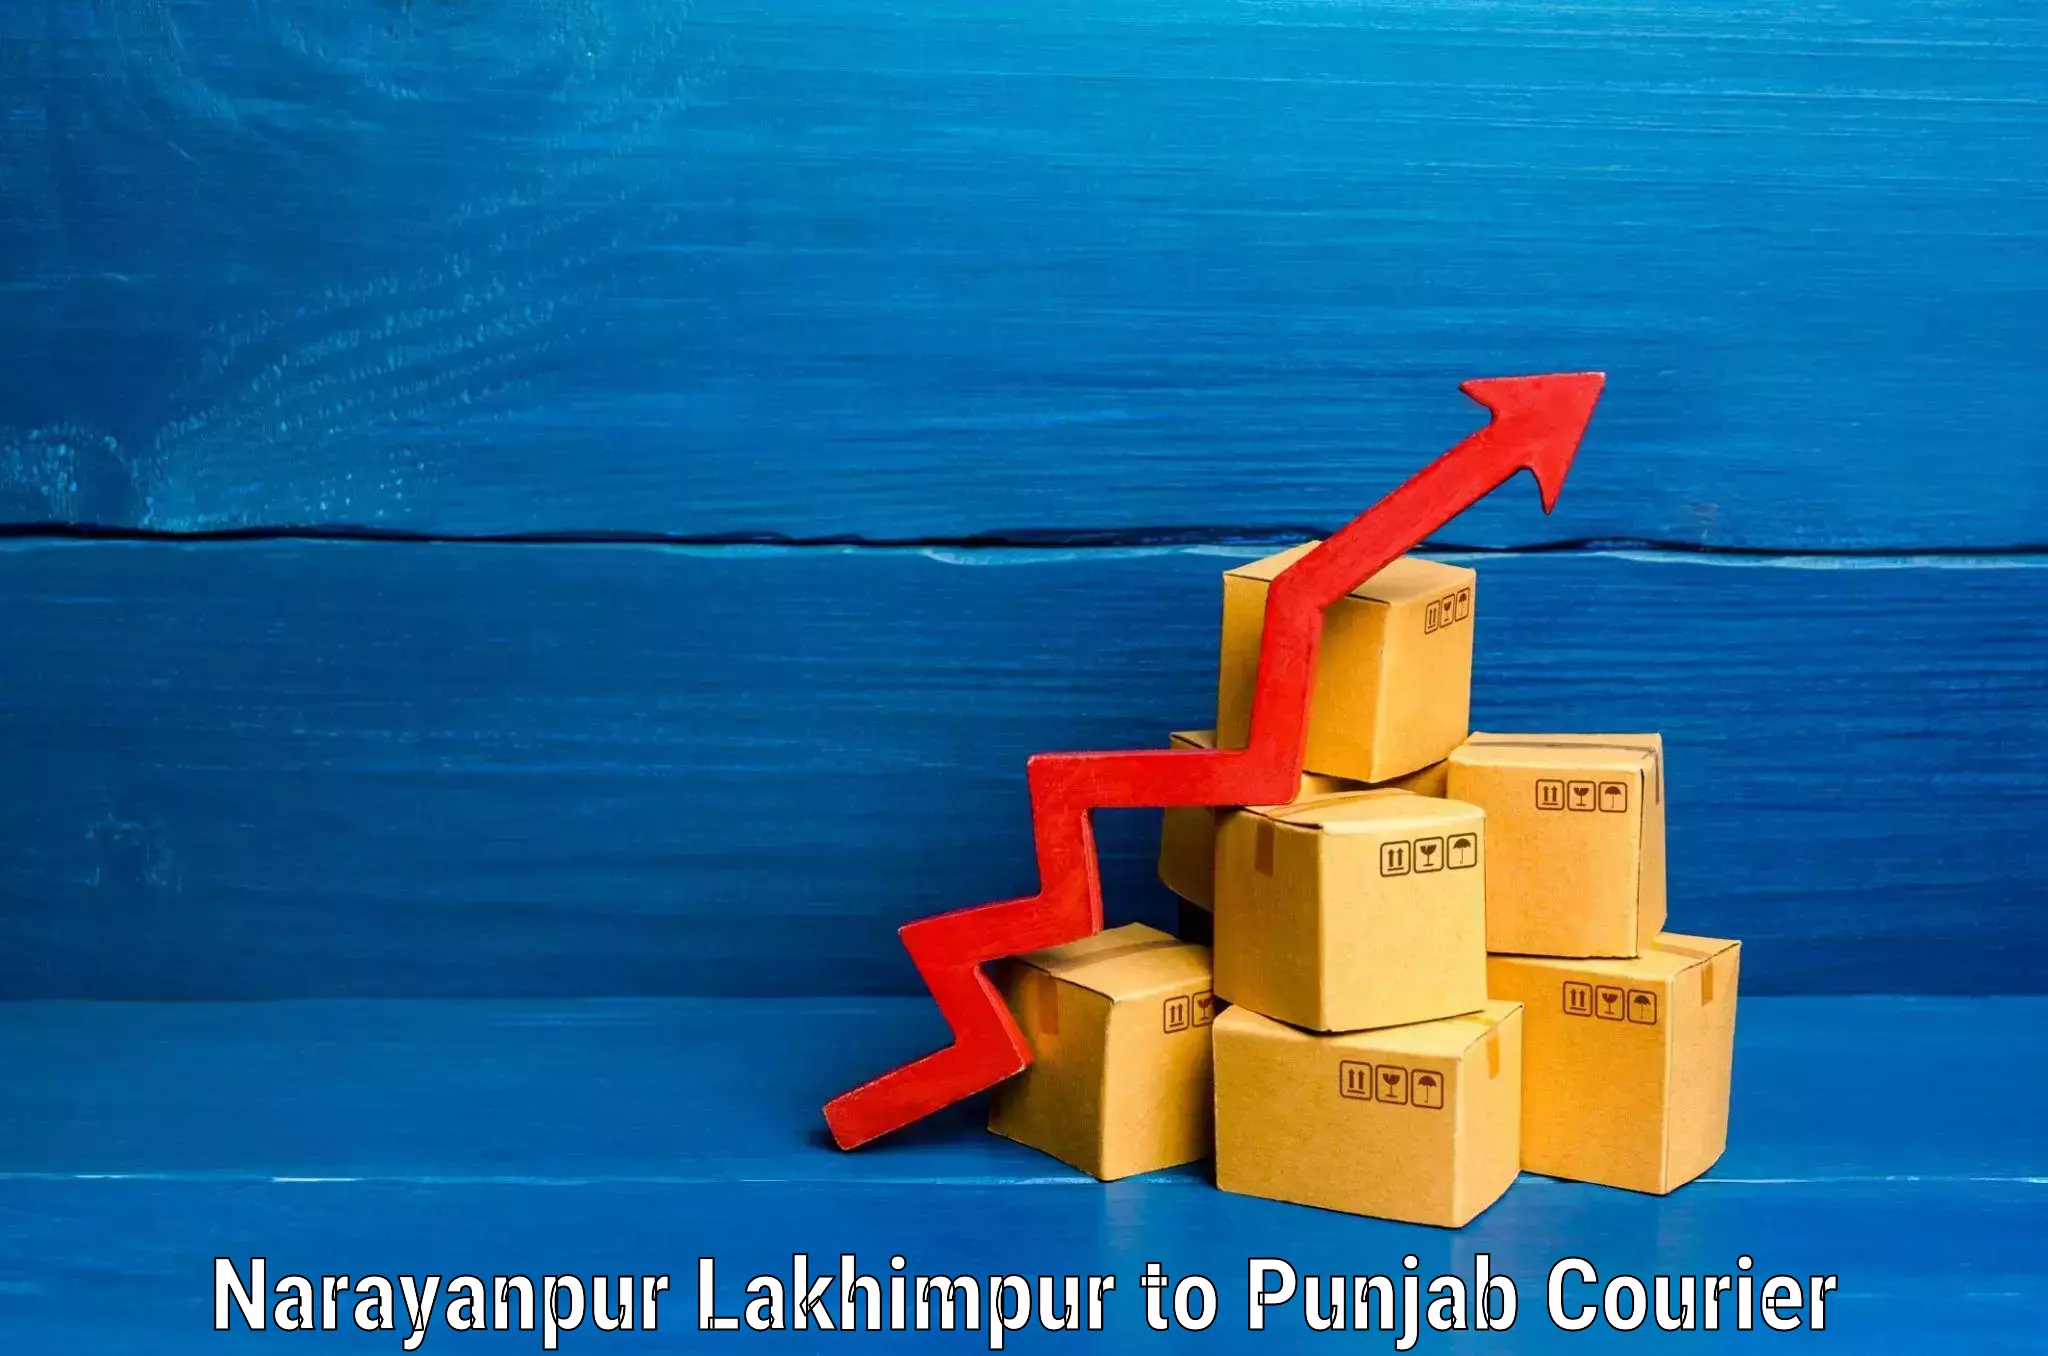 Baggage delivery optimization Narayanpur Lakhimpur to Amritsar